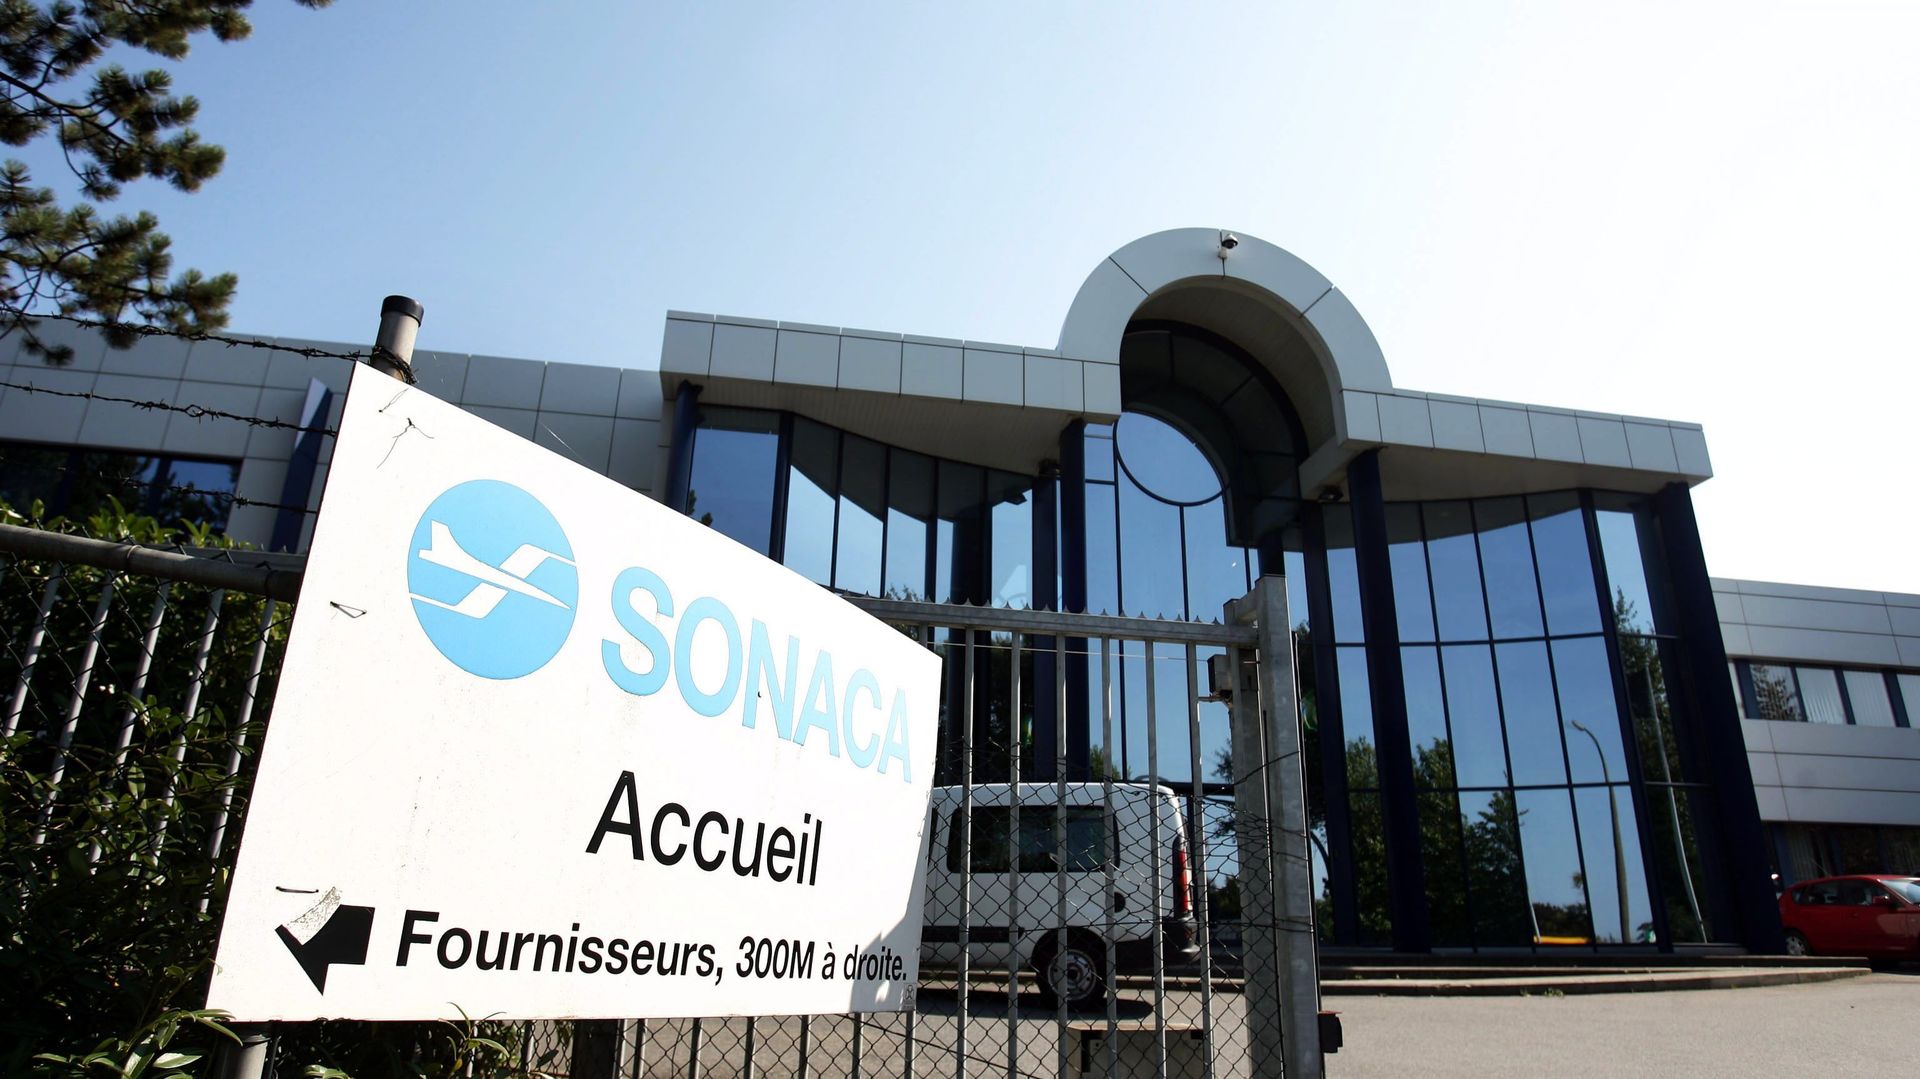 La Sonaca est basée à Gosselies, près de Charleroi.